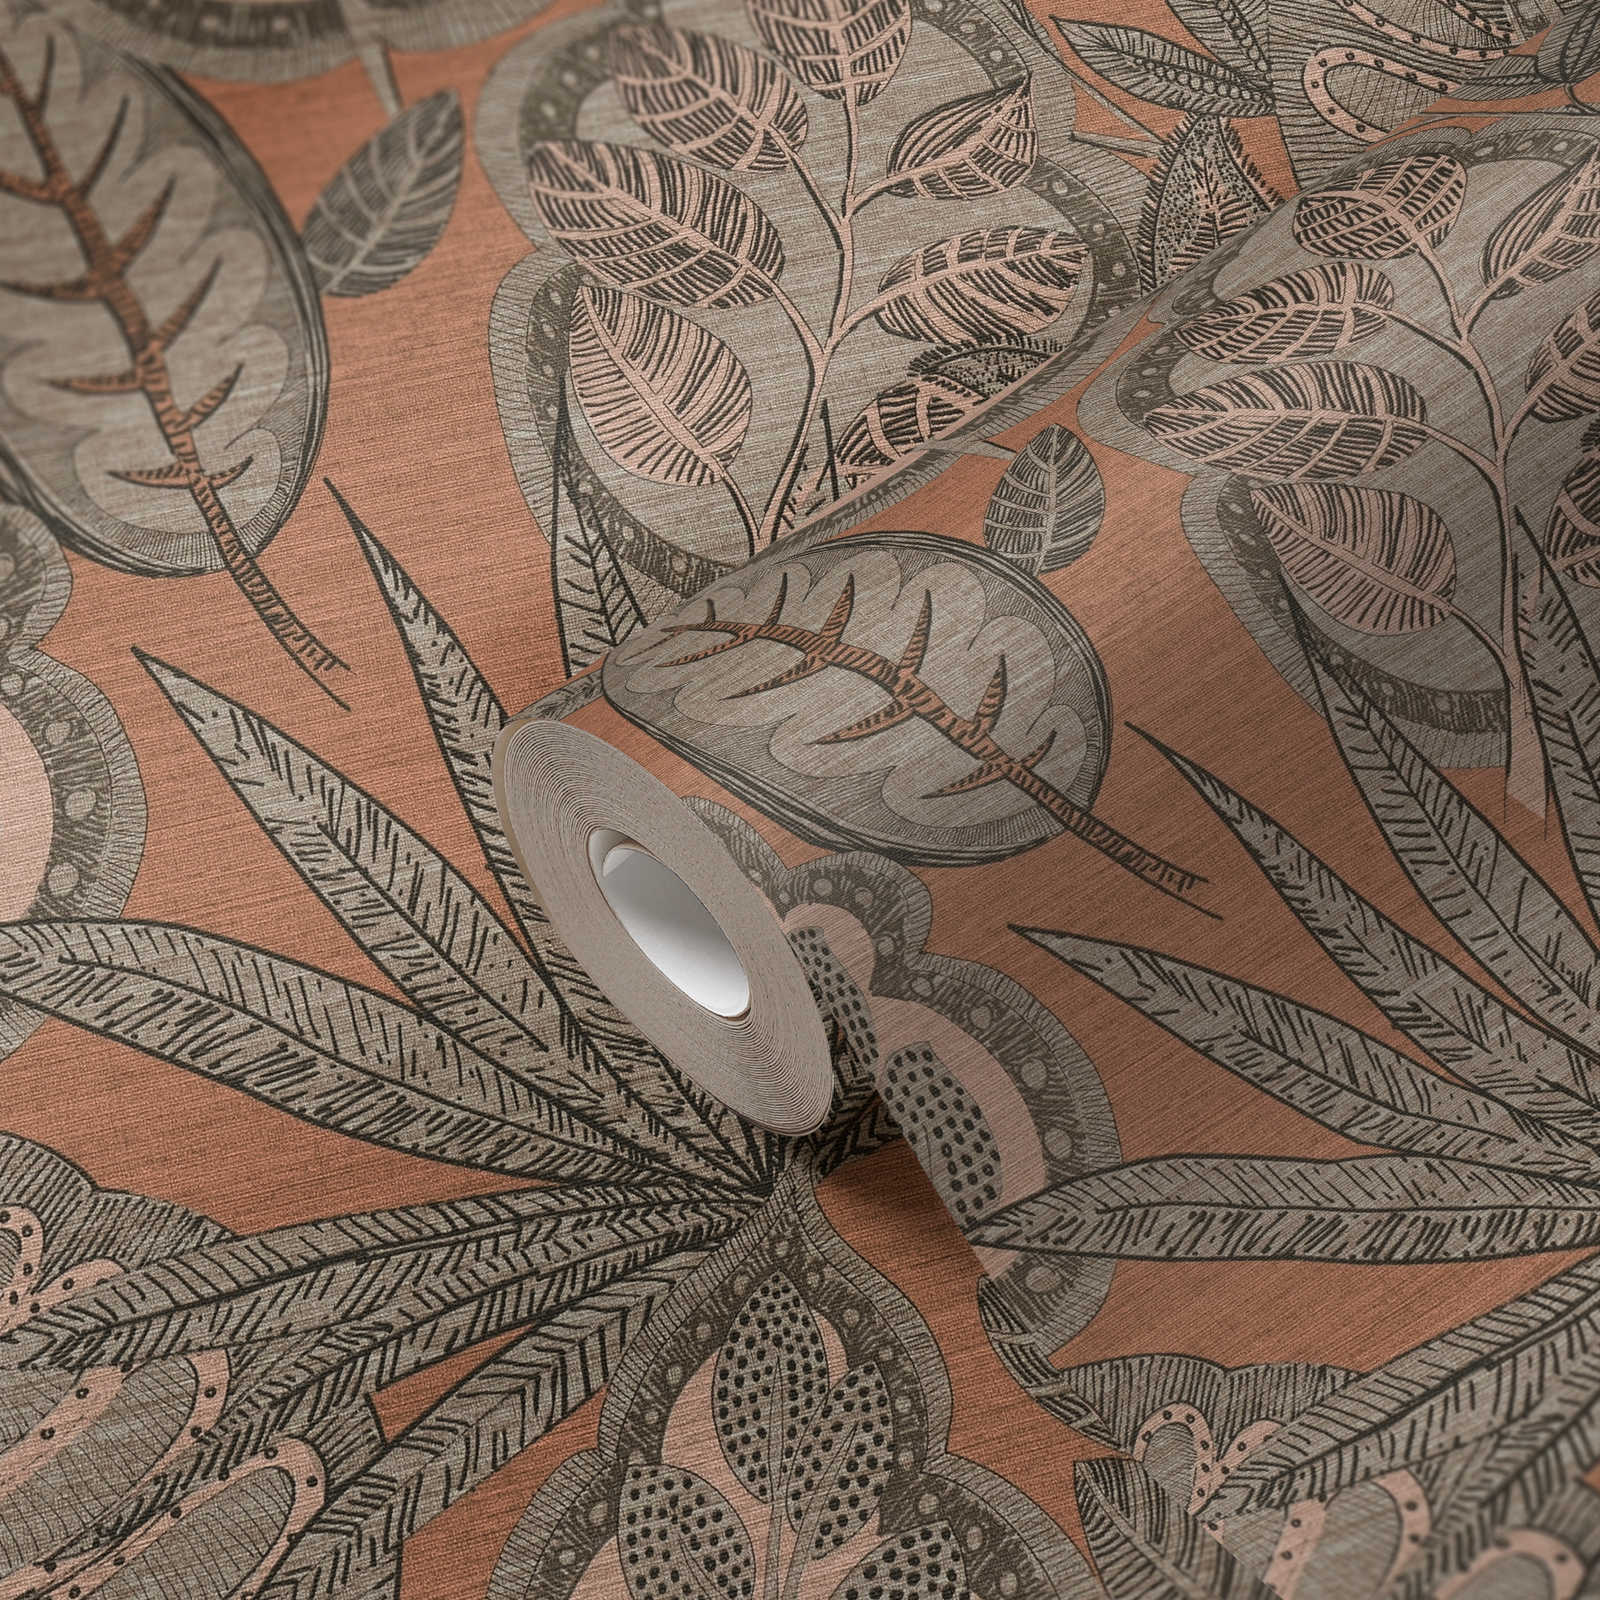             Papel pintado no tejido de diseño gráfico floral con estructura ligera, mate - rosa, gris, topo
        